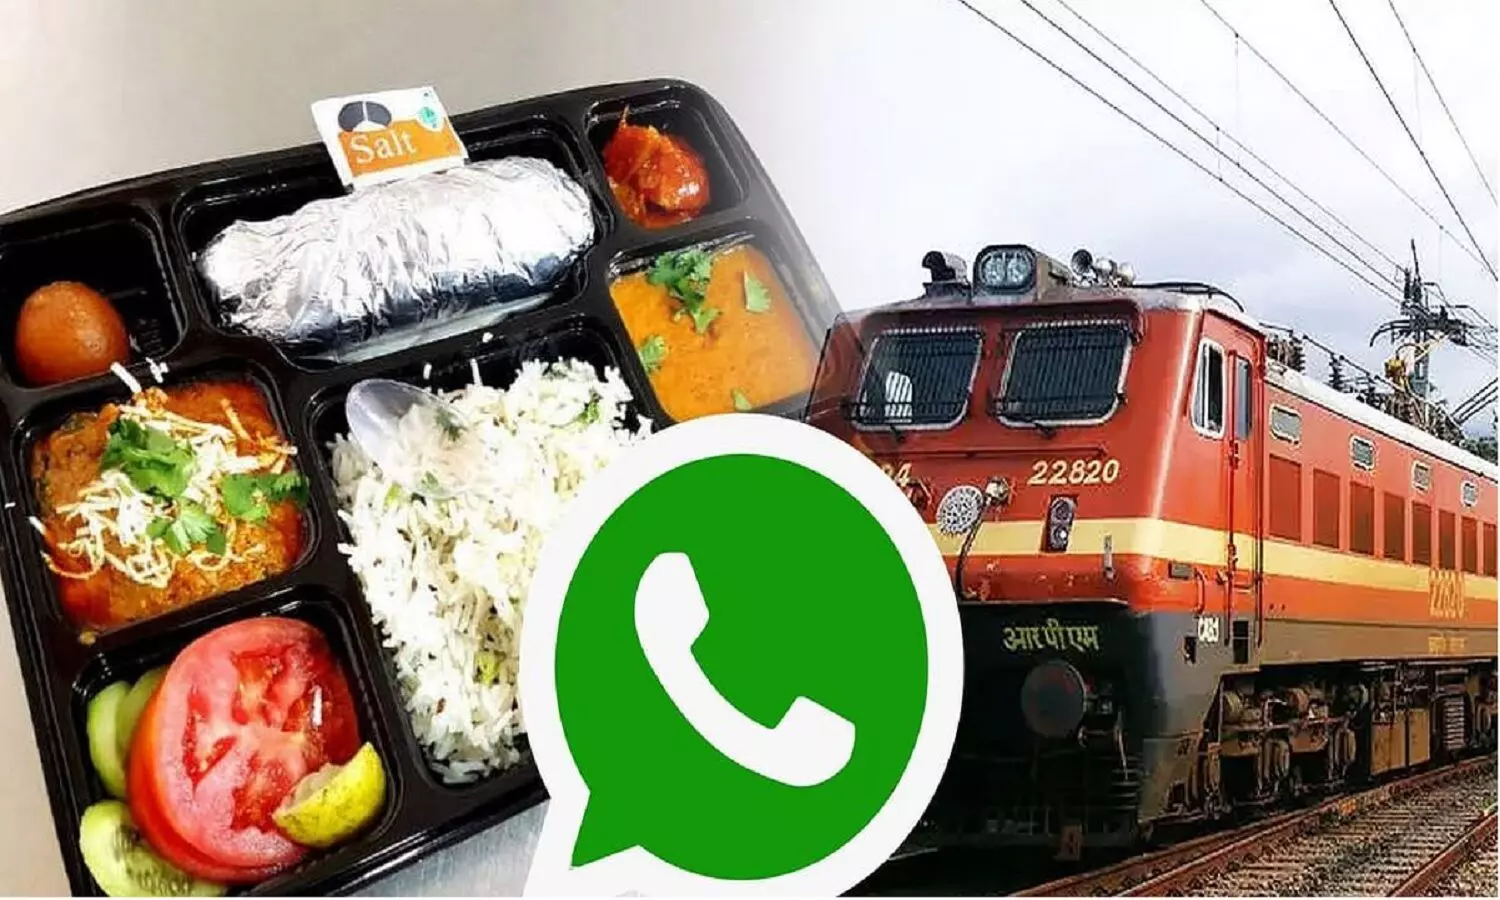 ट्रेन में यात्रा करते WhatsApp से खाना कैसे आर्डर करें? सिर्फ PNR की मदद से आपकी सीट तक खाना डिलेवर होगा